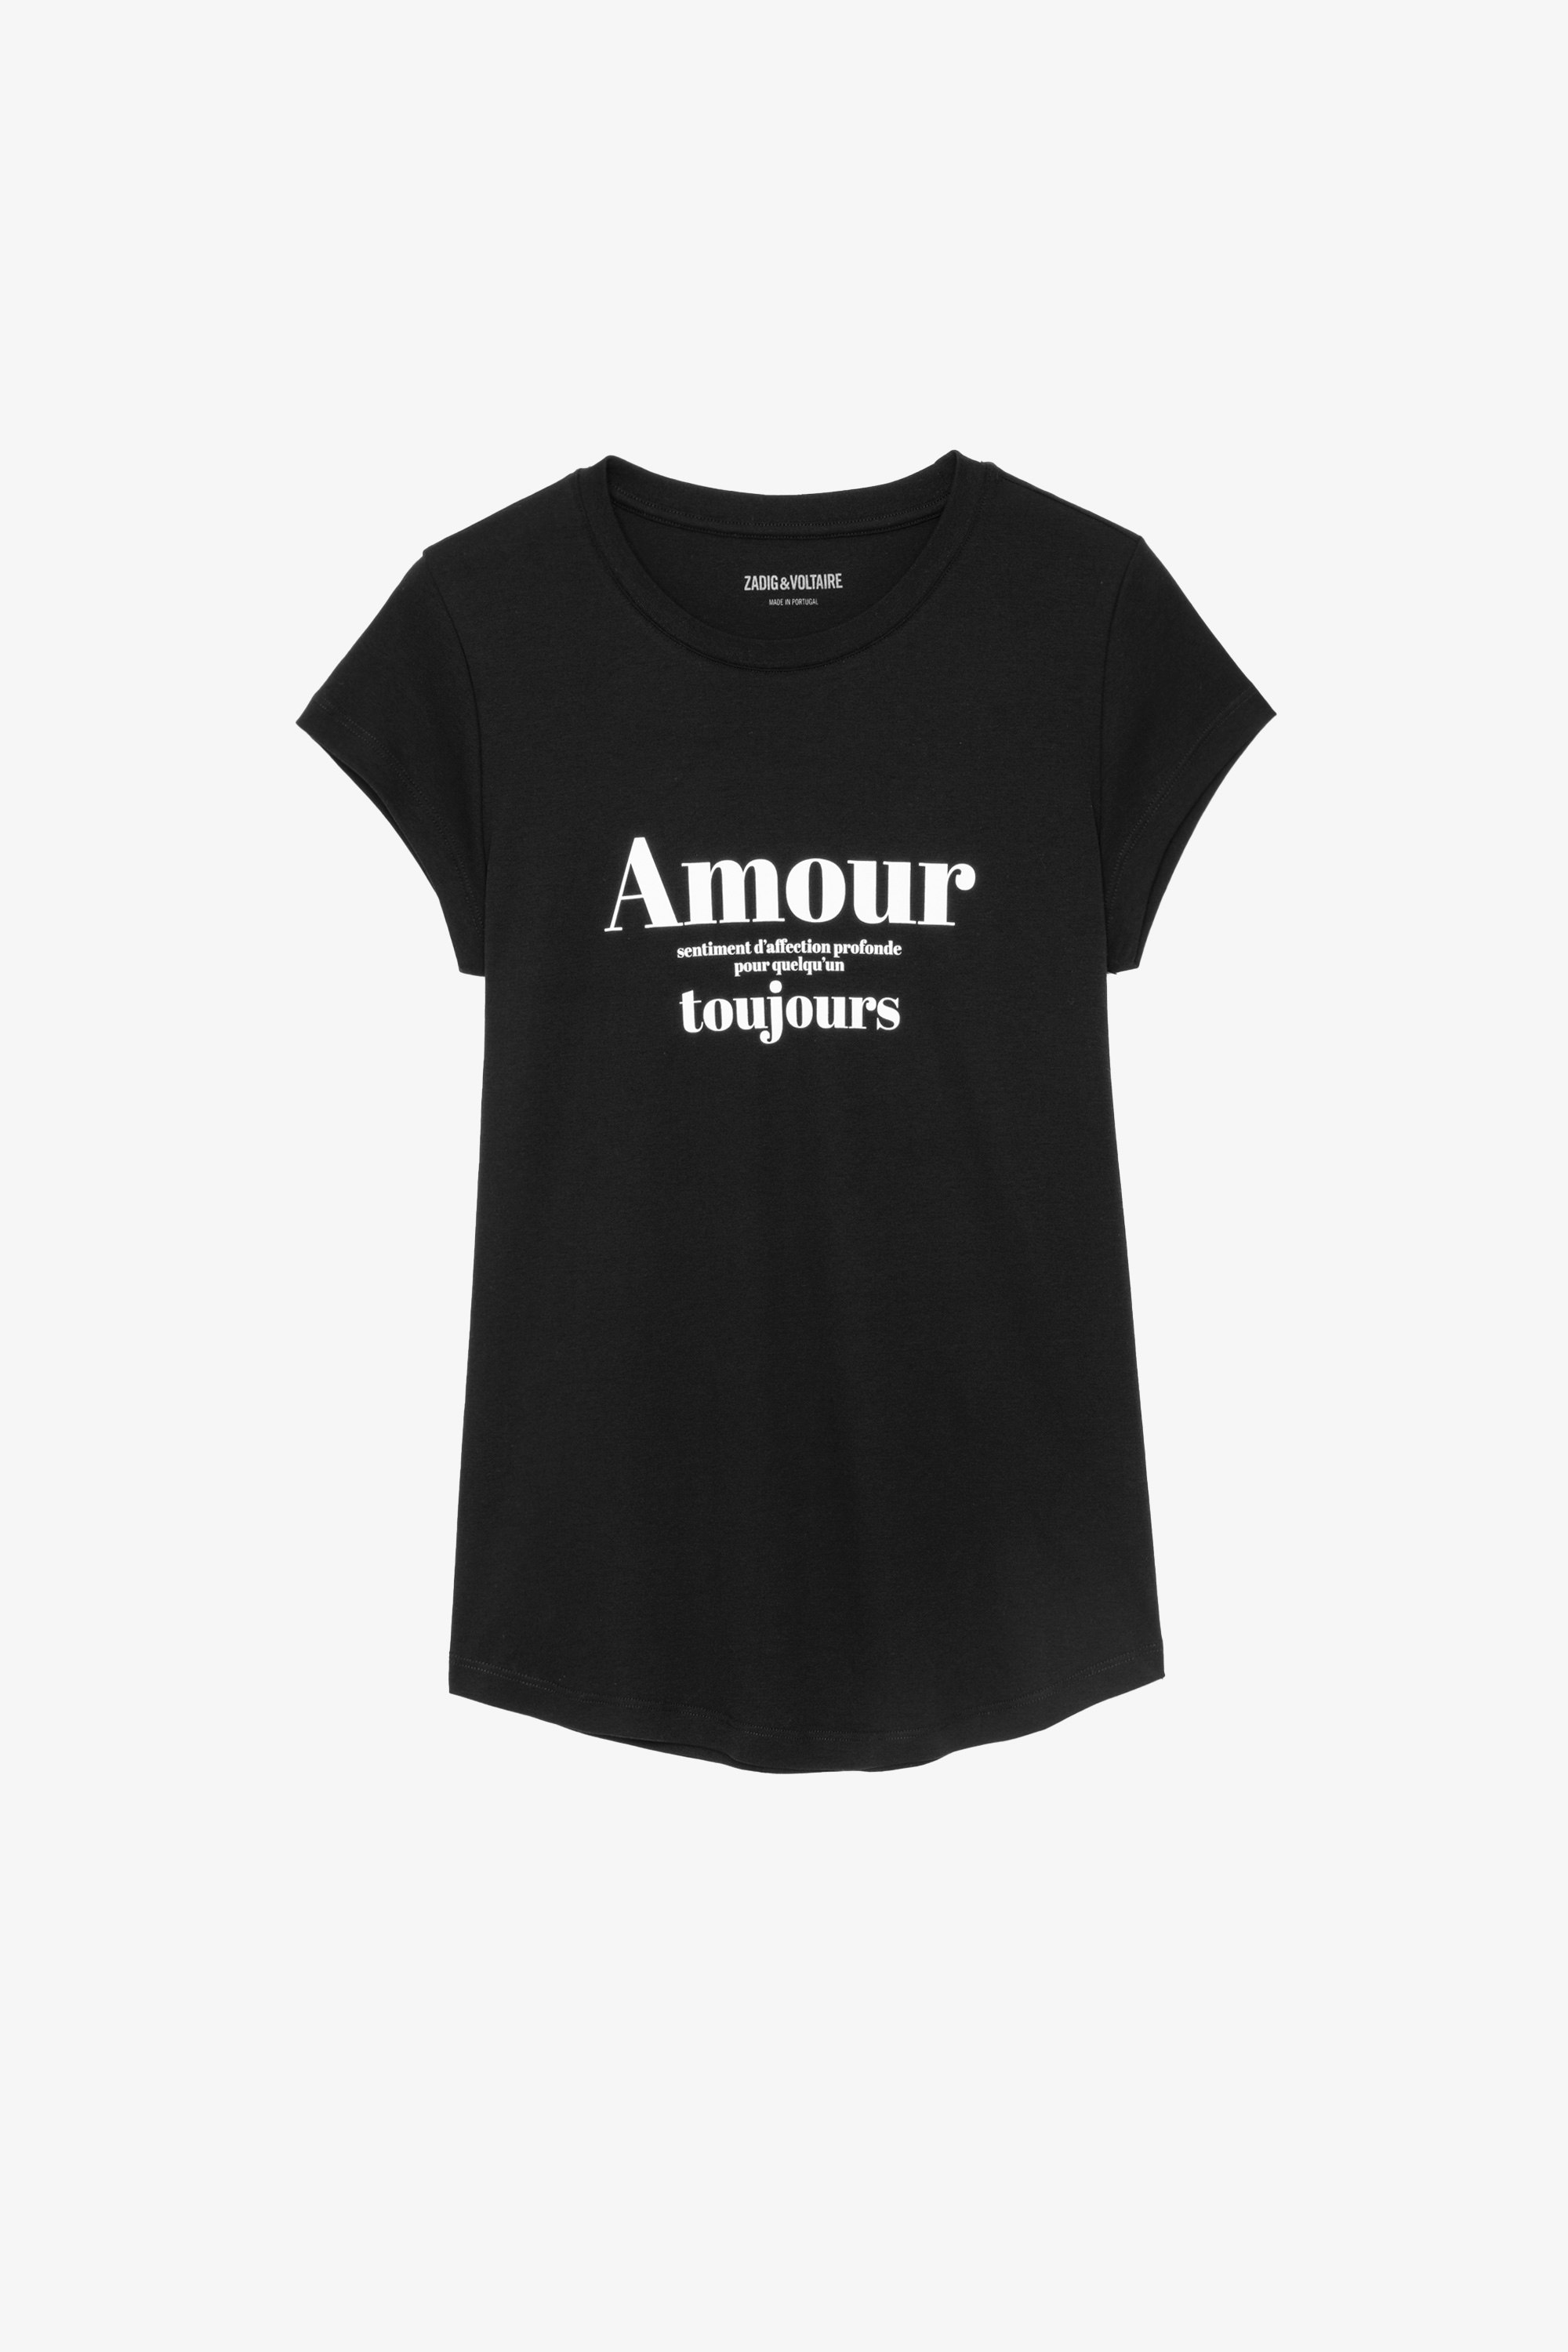 T-shirt Skinny Amour Toujours - T-shirt en coton noir imprimé "Amour Toujours" contrasté.